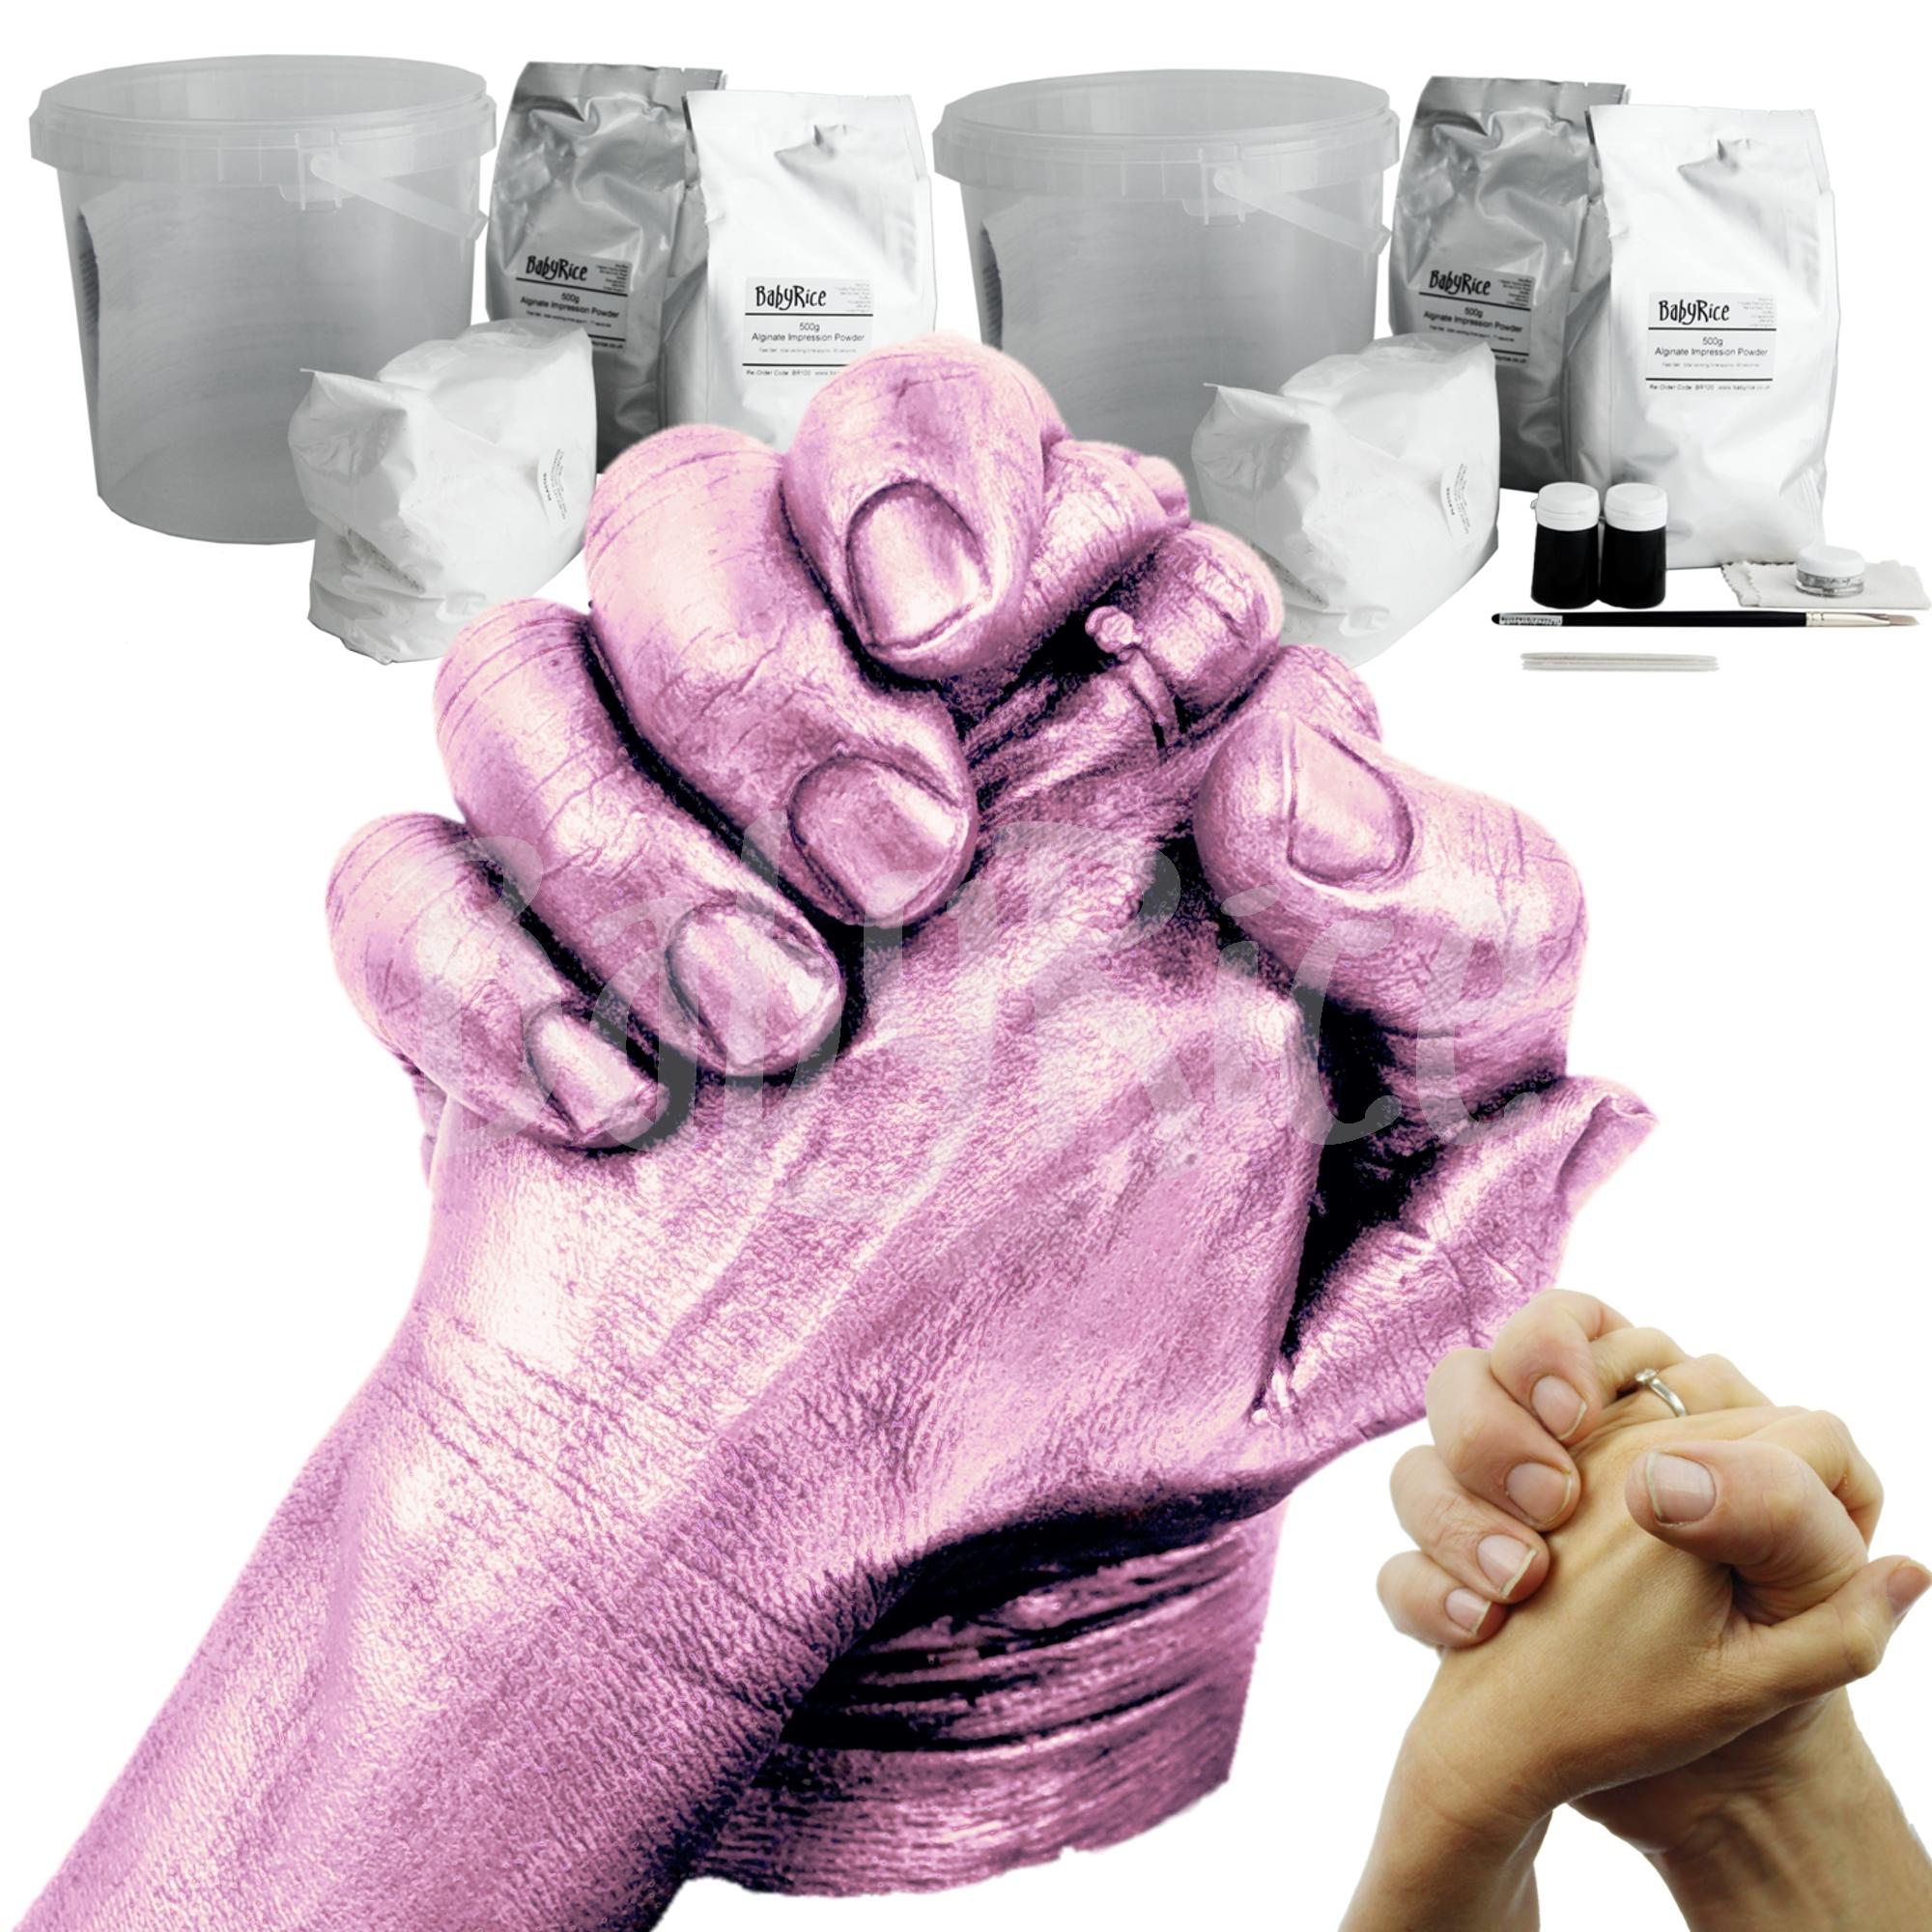 Adult Casting Kit Pink Finish Paint